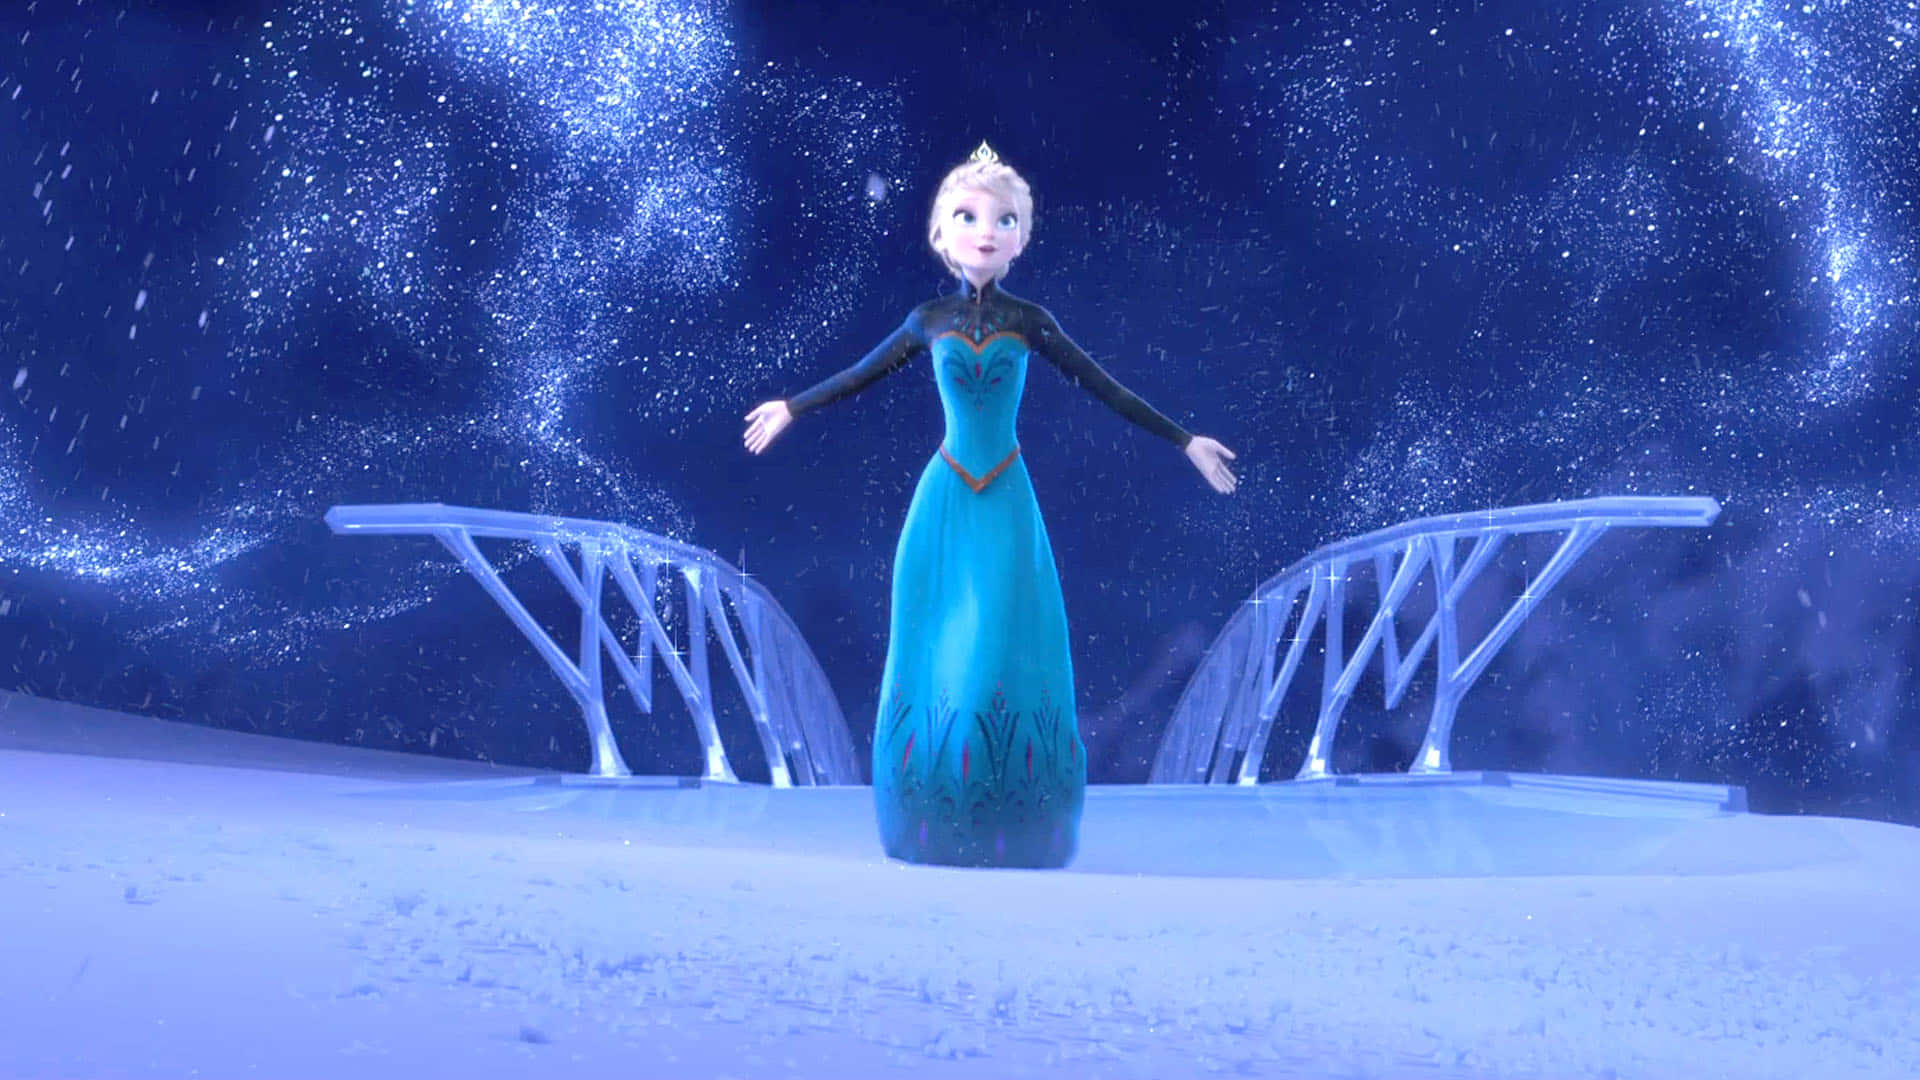 A Magical View of Elsa